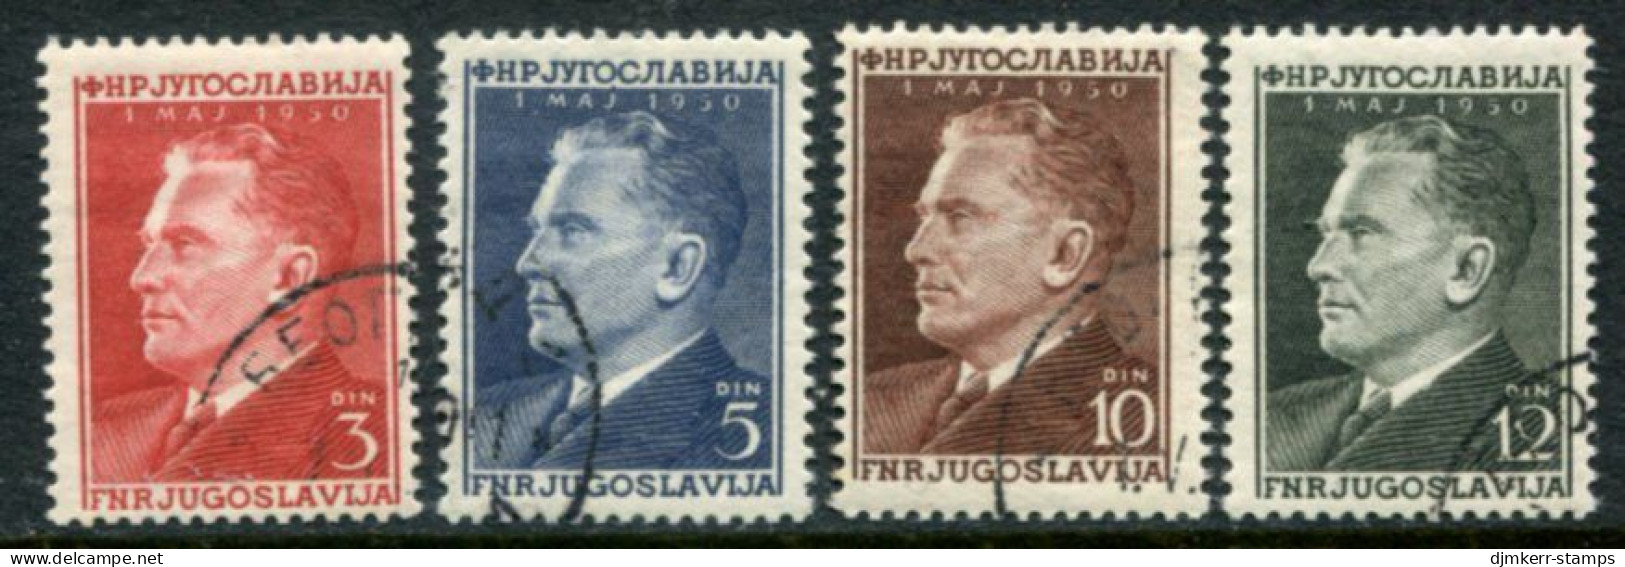 YUGOSLAVIA 1950 Labour Day - Tito Used.  Michel 605-08 - Usados